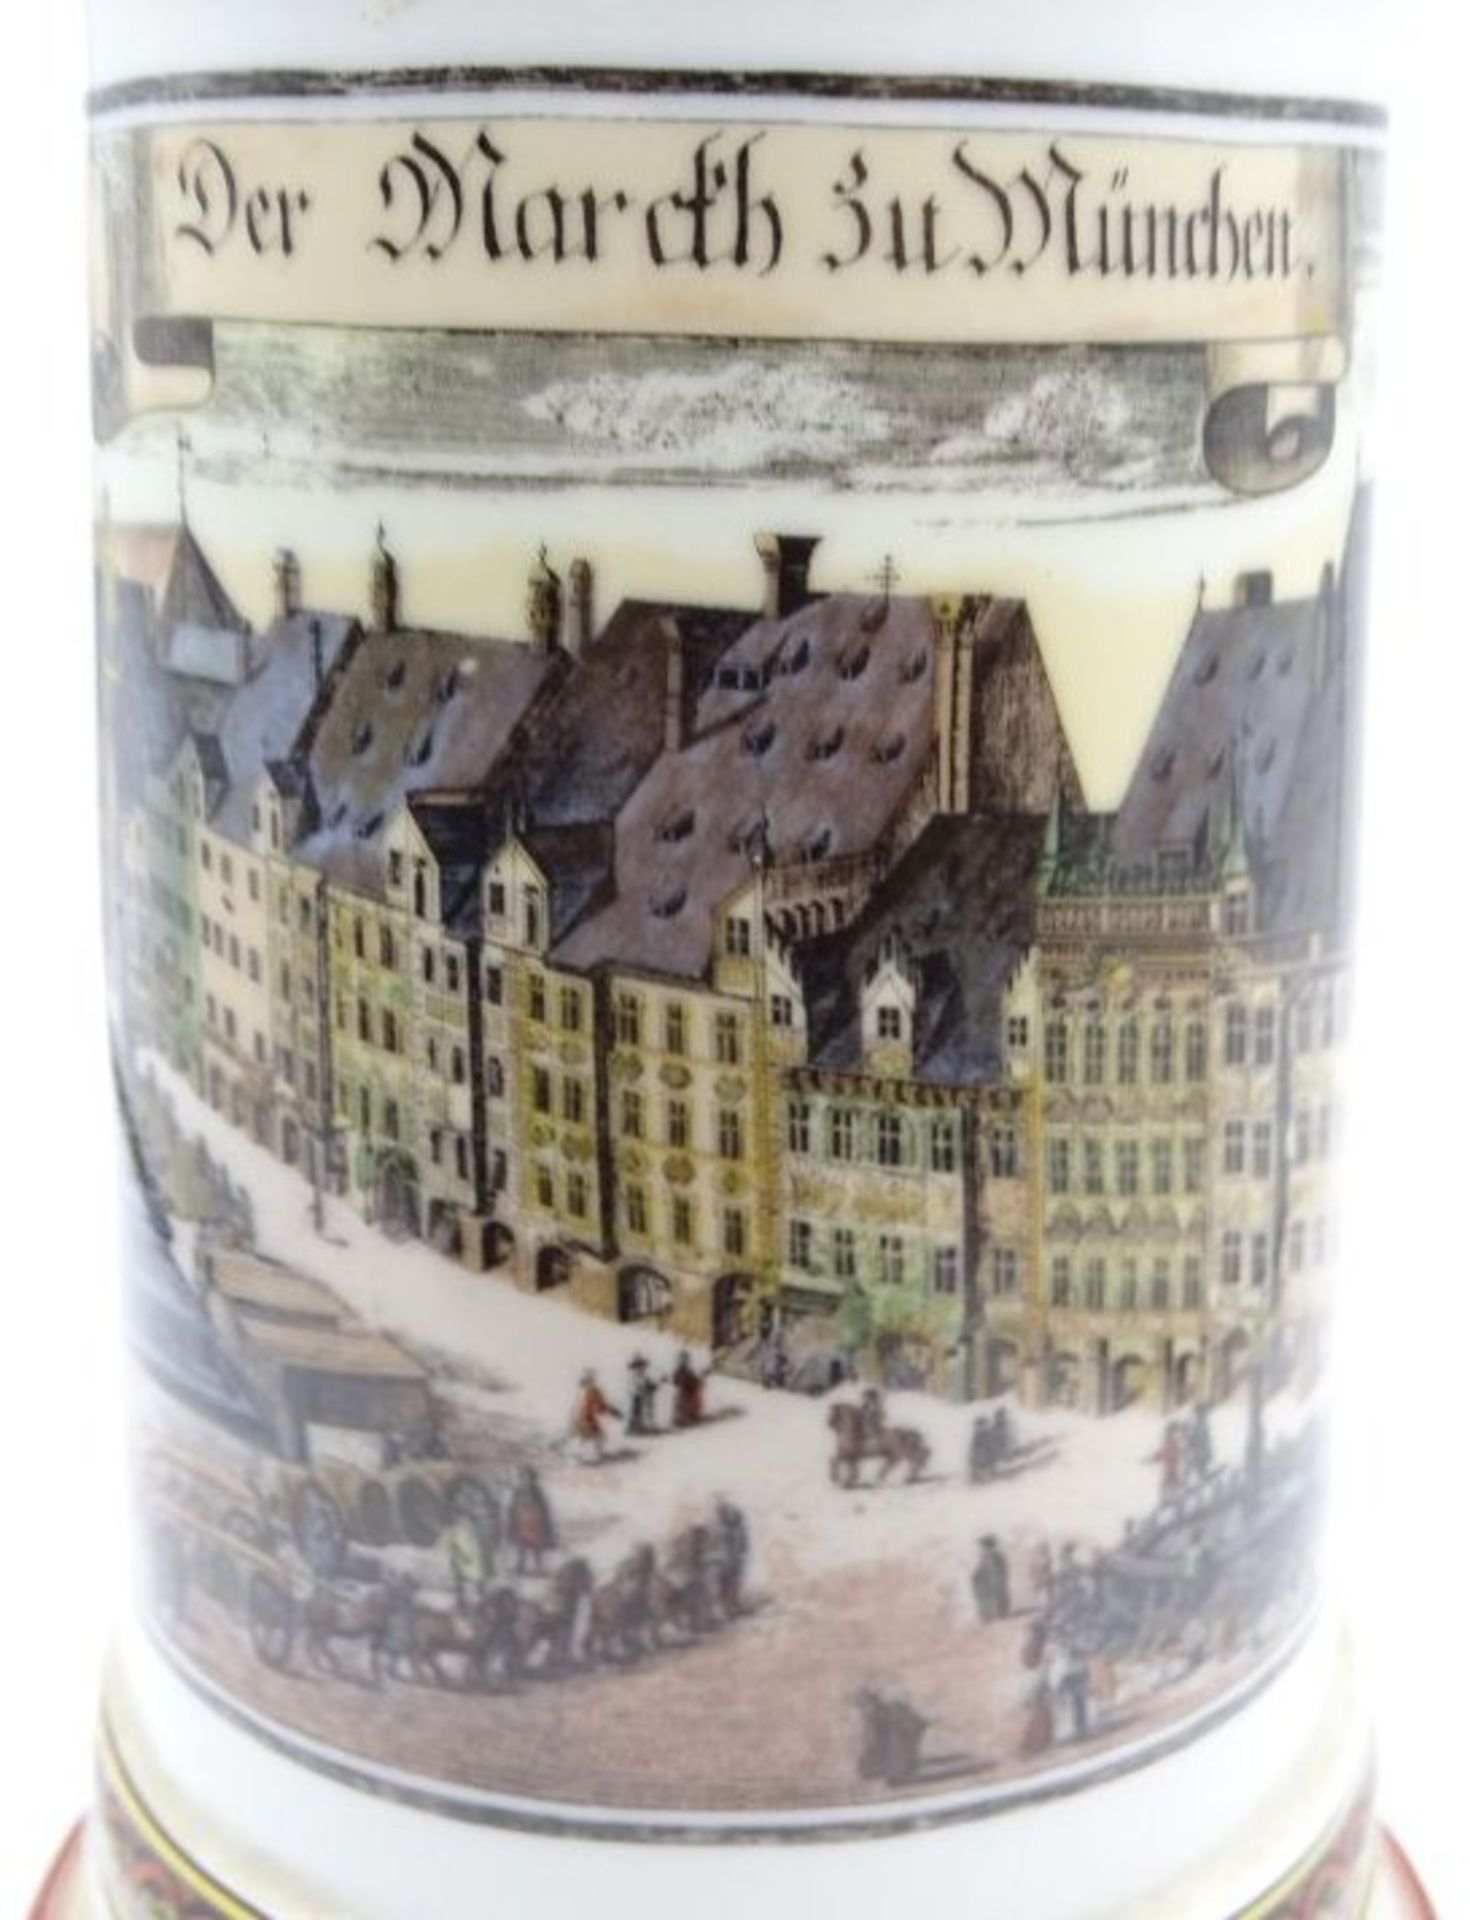 Ansichtenbierkrug, Der Marcth zu München, Boden mit Lithophanie, H-25cm.- - -22.61 % buyer's premium - Bild 4 aus 5